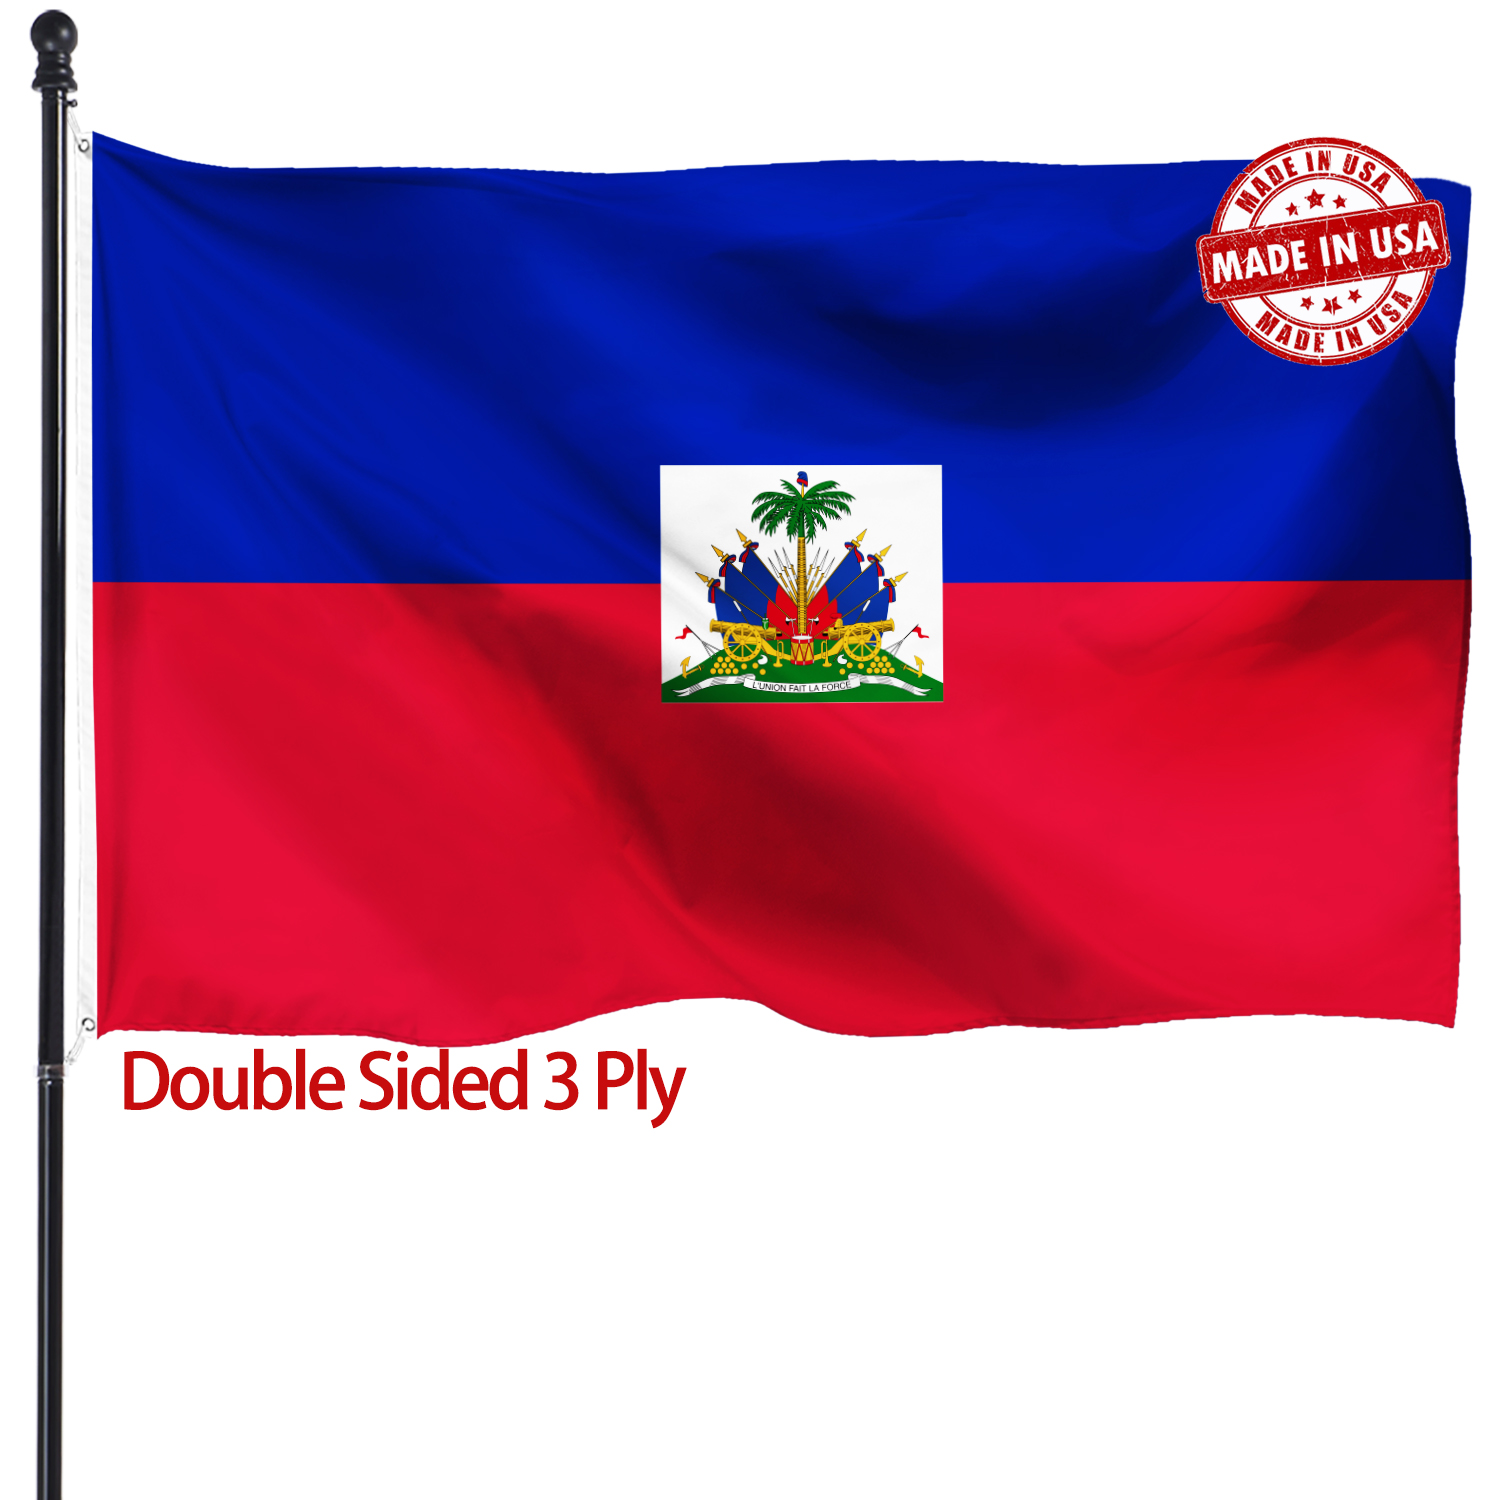 海地旗帜 3x5 厚重 亚马逊专供